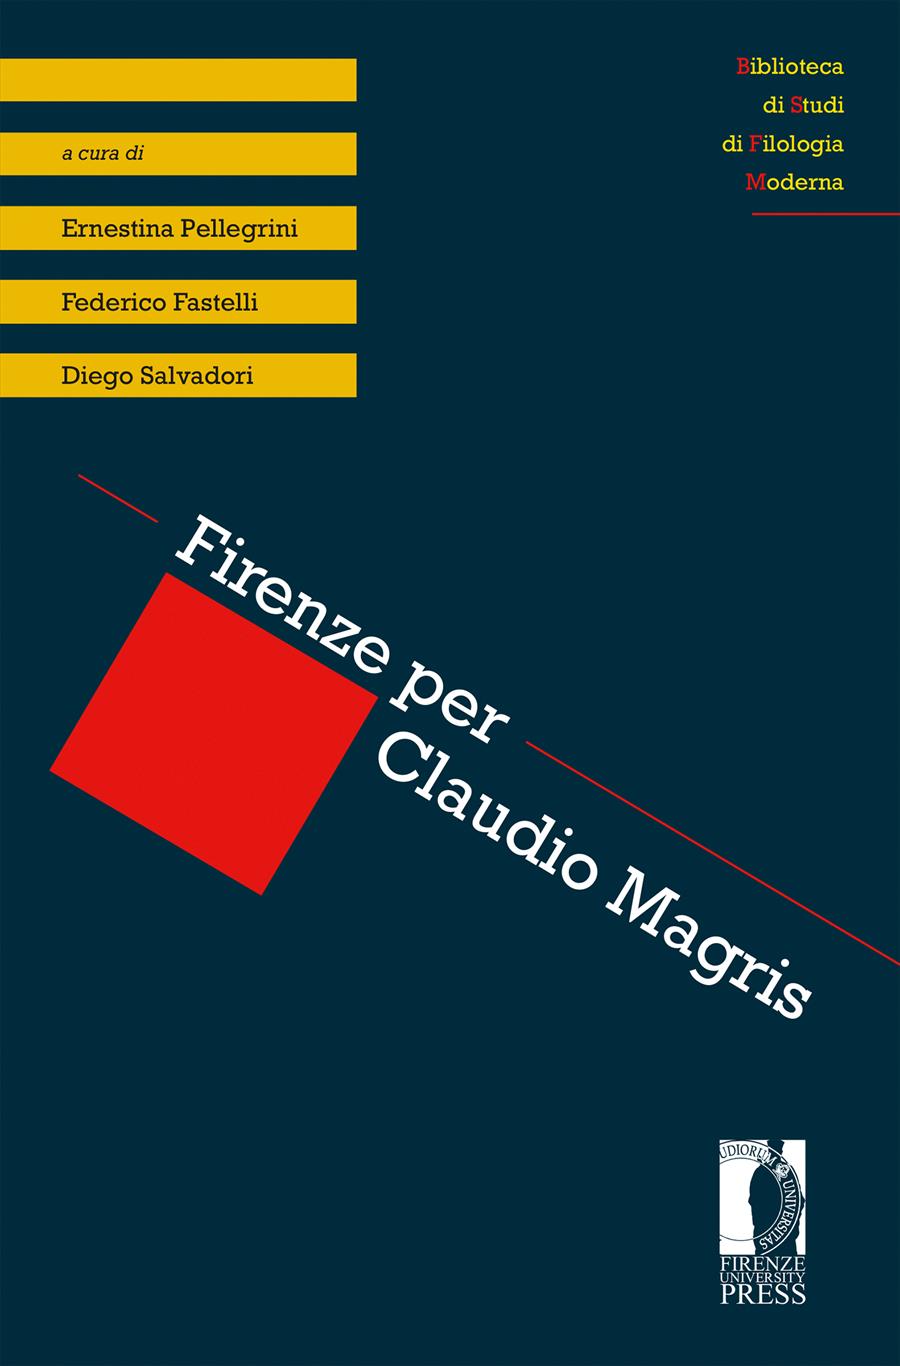 Imagen de portada del libro Firenze per Claudio Magris